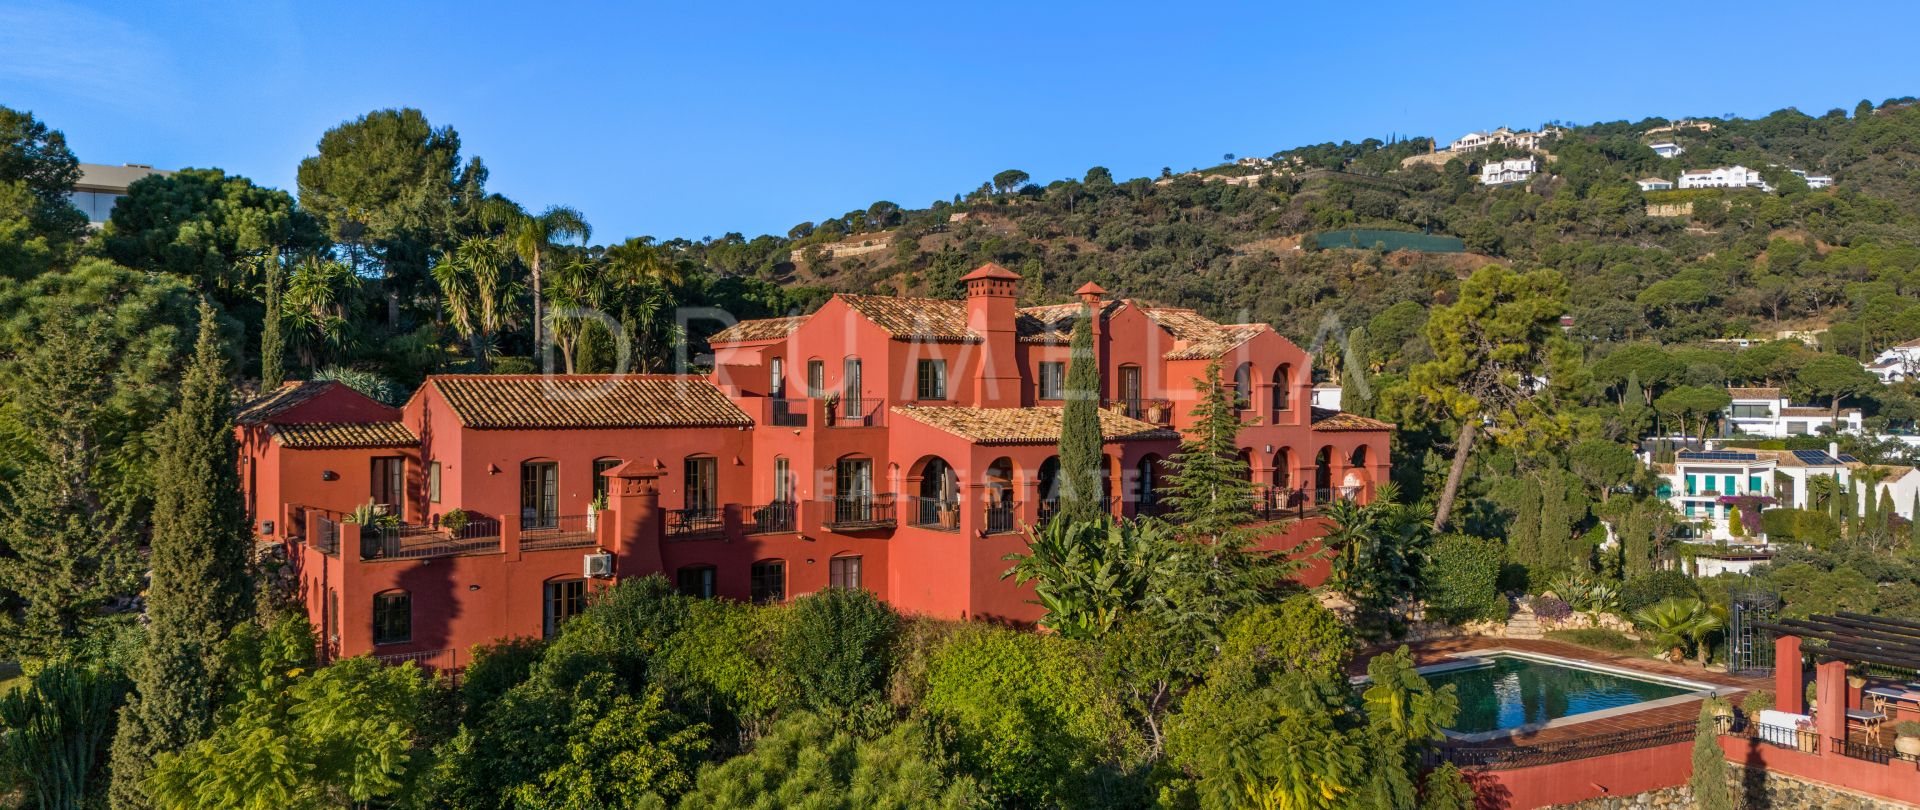 Villa de estilo andaluz en venta en el corazón de El Madroñal, Behanavis